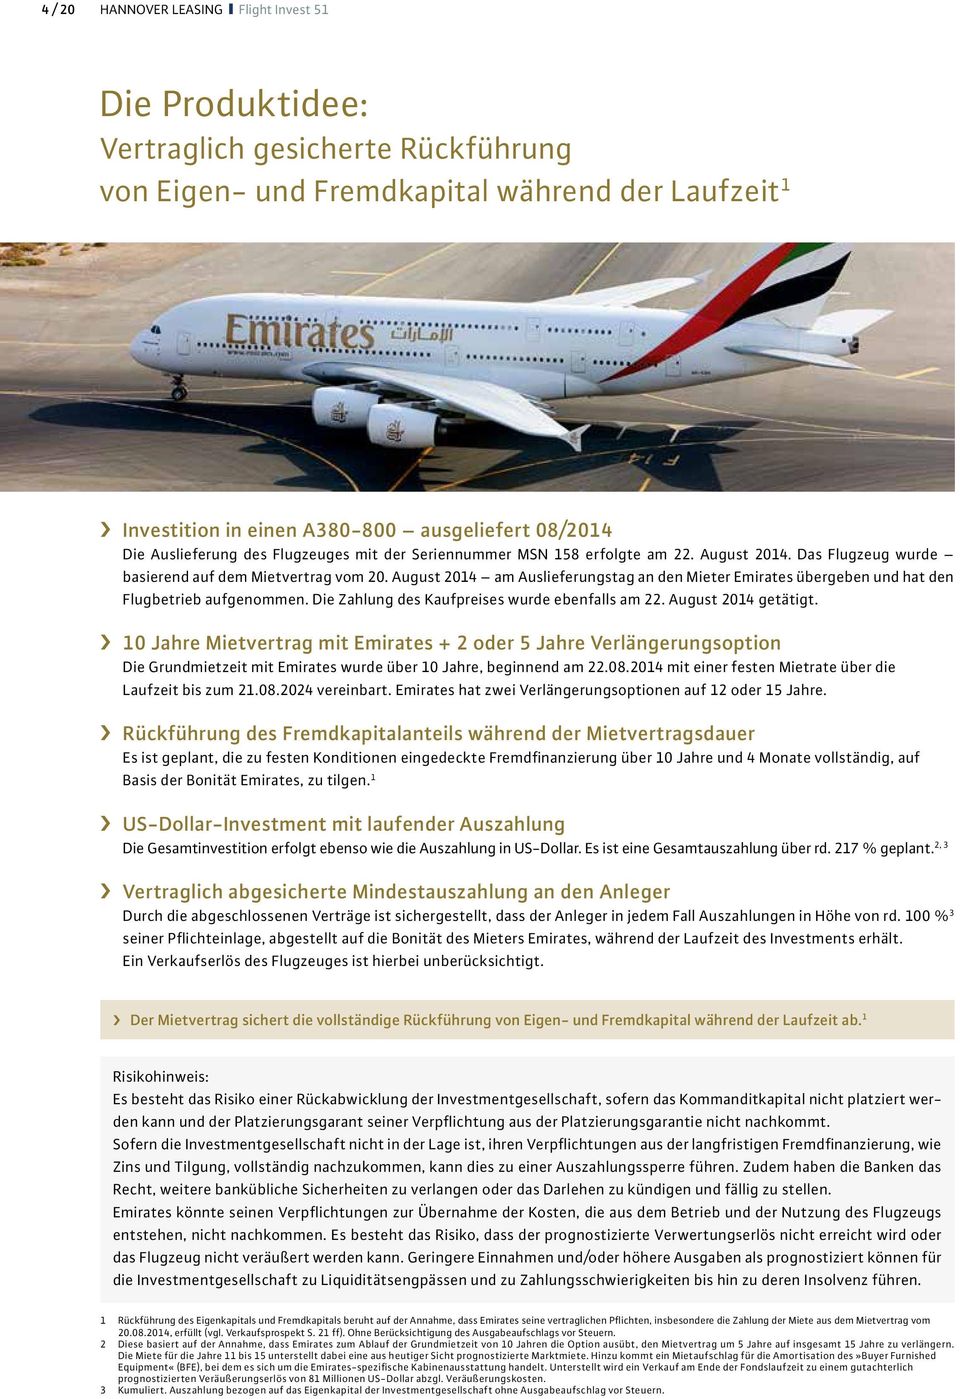 August 2014 am Auslieferungstag an den Mieter Emirates übergeben und hat den Flugbetrieb aufgenommen. Die Zahlung des Kaufpreises wurde ebenfalls am 22. August 2014 getätigt.